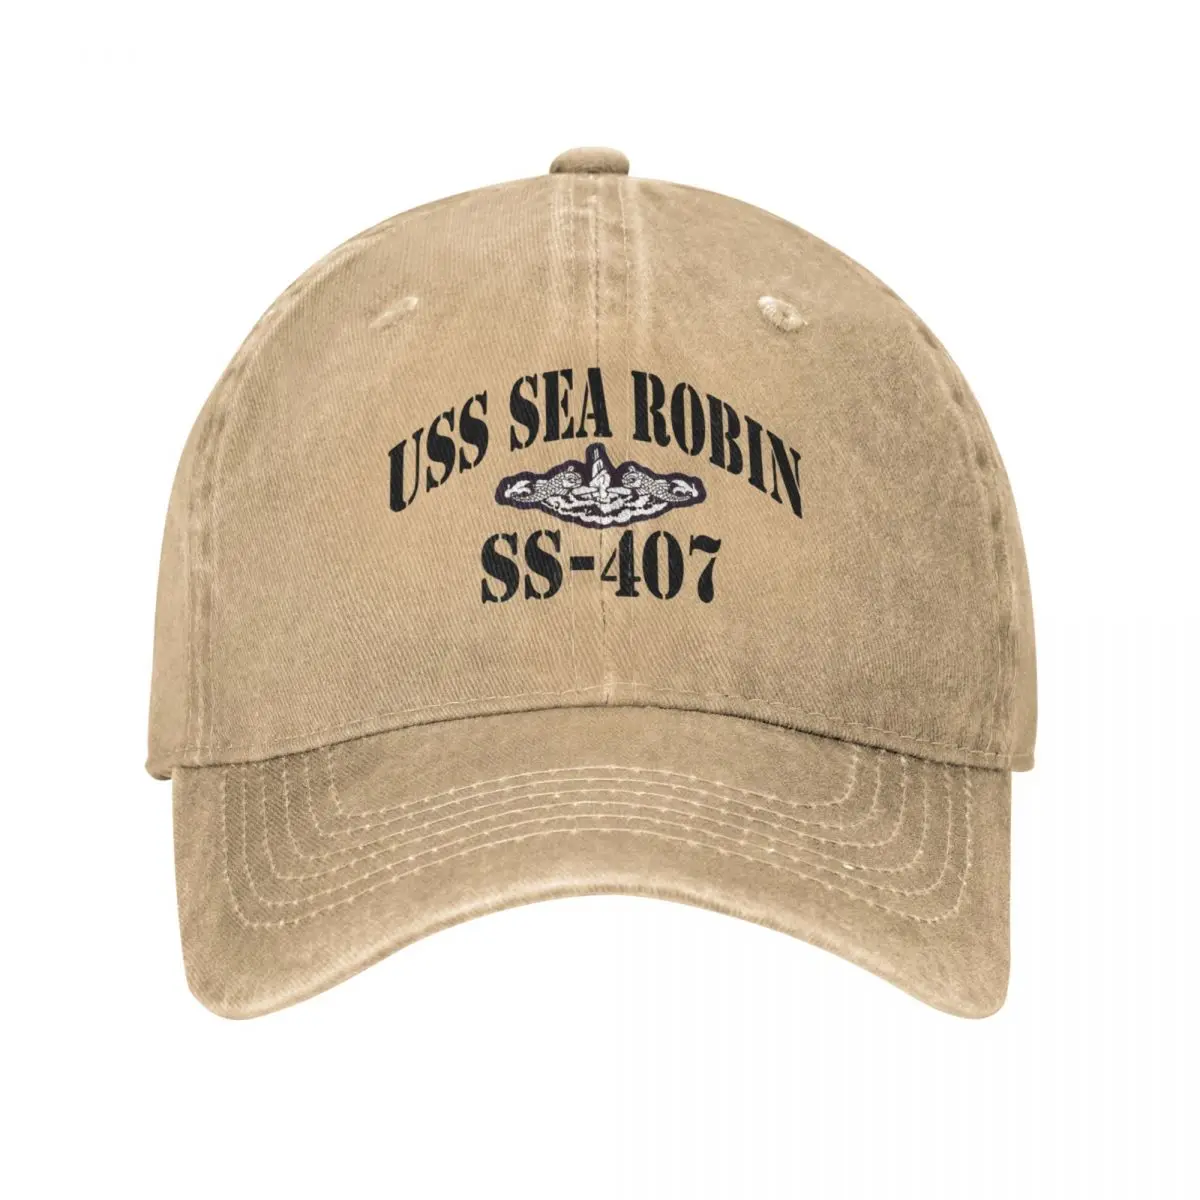 

USS SEA ROBIN (SS-407) STORE Cowboy Hat trucker hats Beach bag baseball cap for men Women's